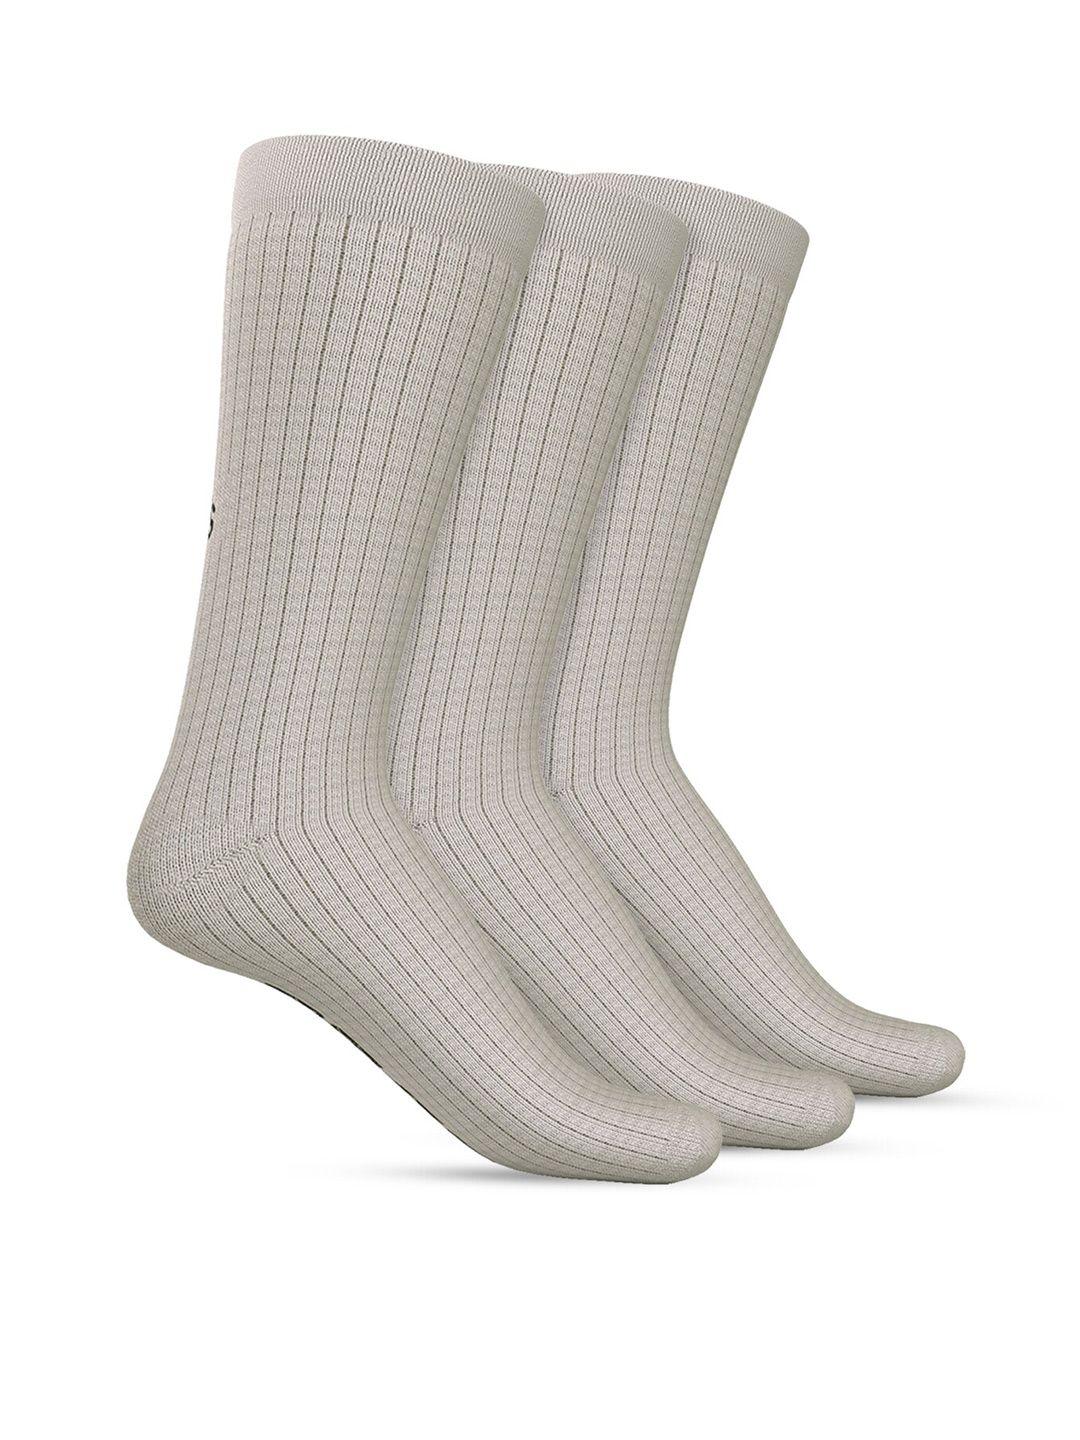 talkingsox unisex pack of 3 striped calf length socks